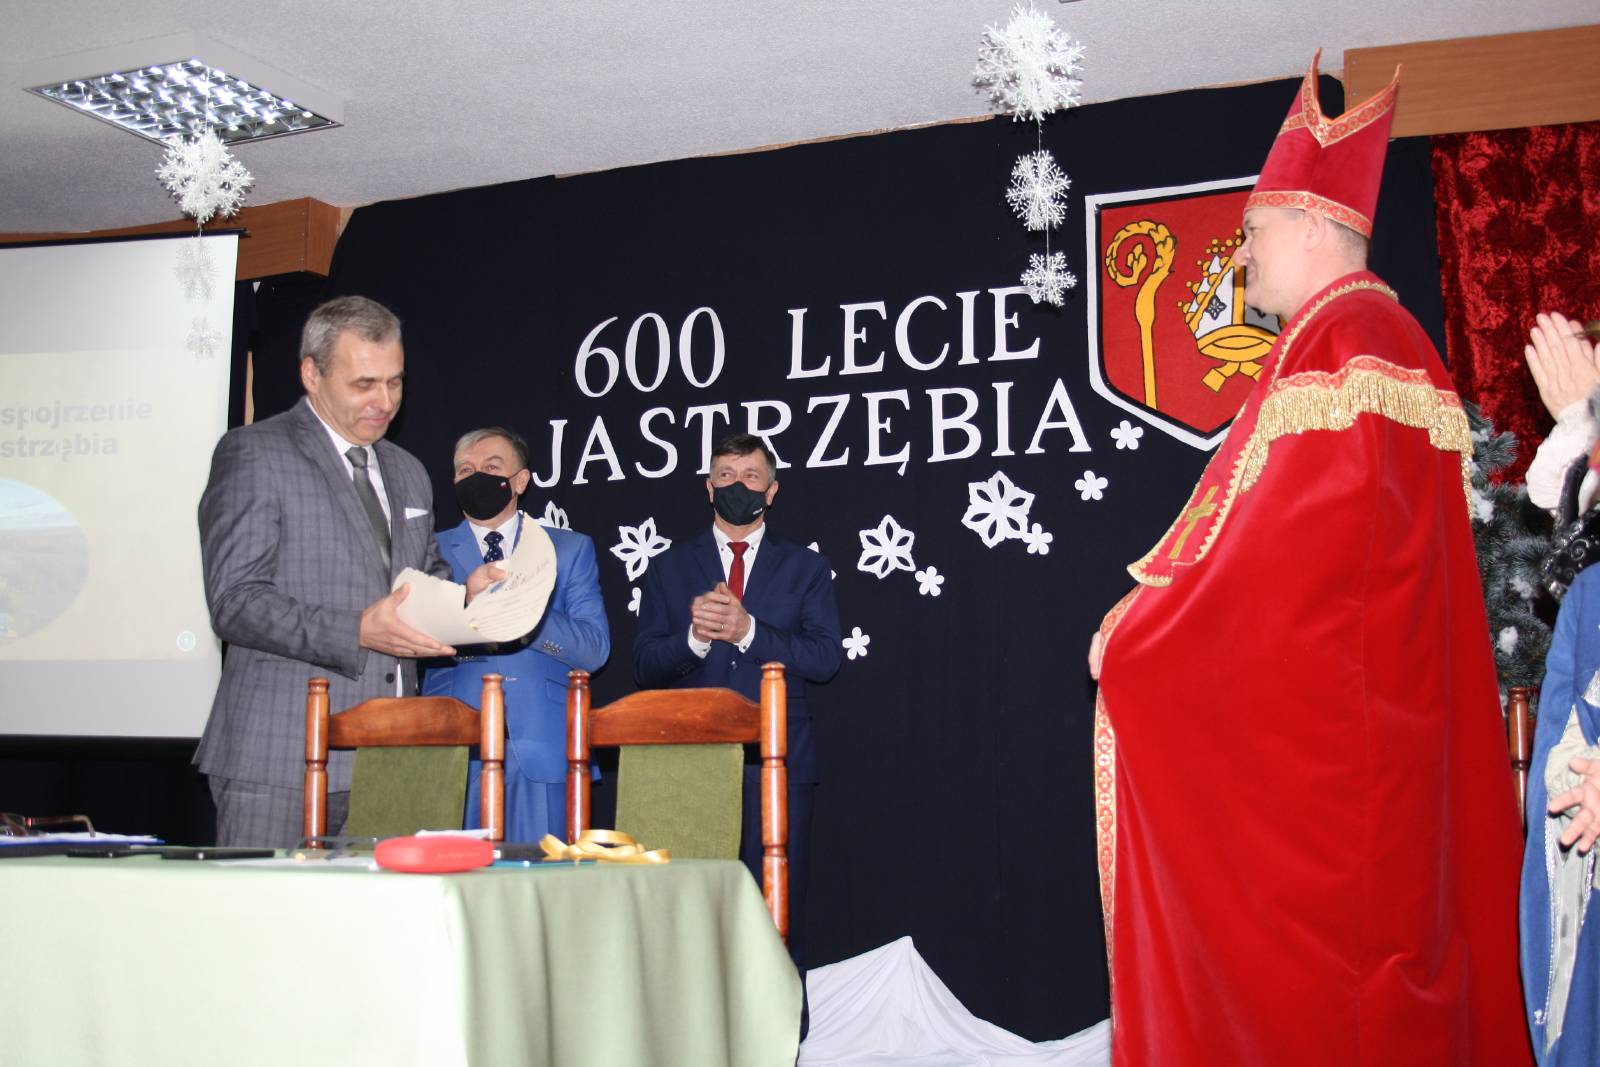 Wójt Gminy Jastrząb, Przewodniczący i Wiceprzewodniczący Rady Gminy oraz osoba grająca Biskupa Wojciecha Jastrzębca czytająca akt założenia miejscowości Jastrząb, na tle tablicy z napisem 600 Lecie Jastrzębia